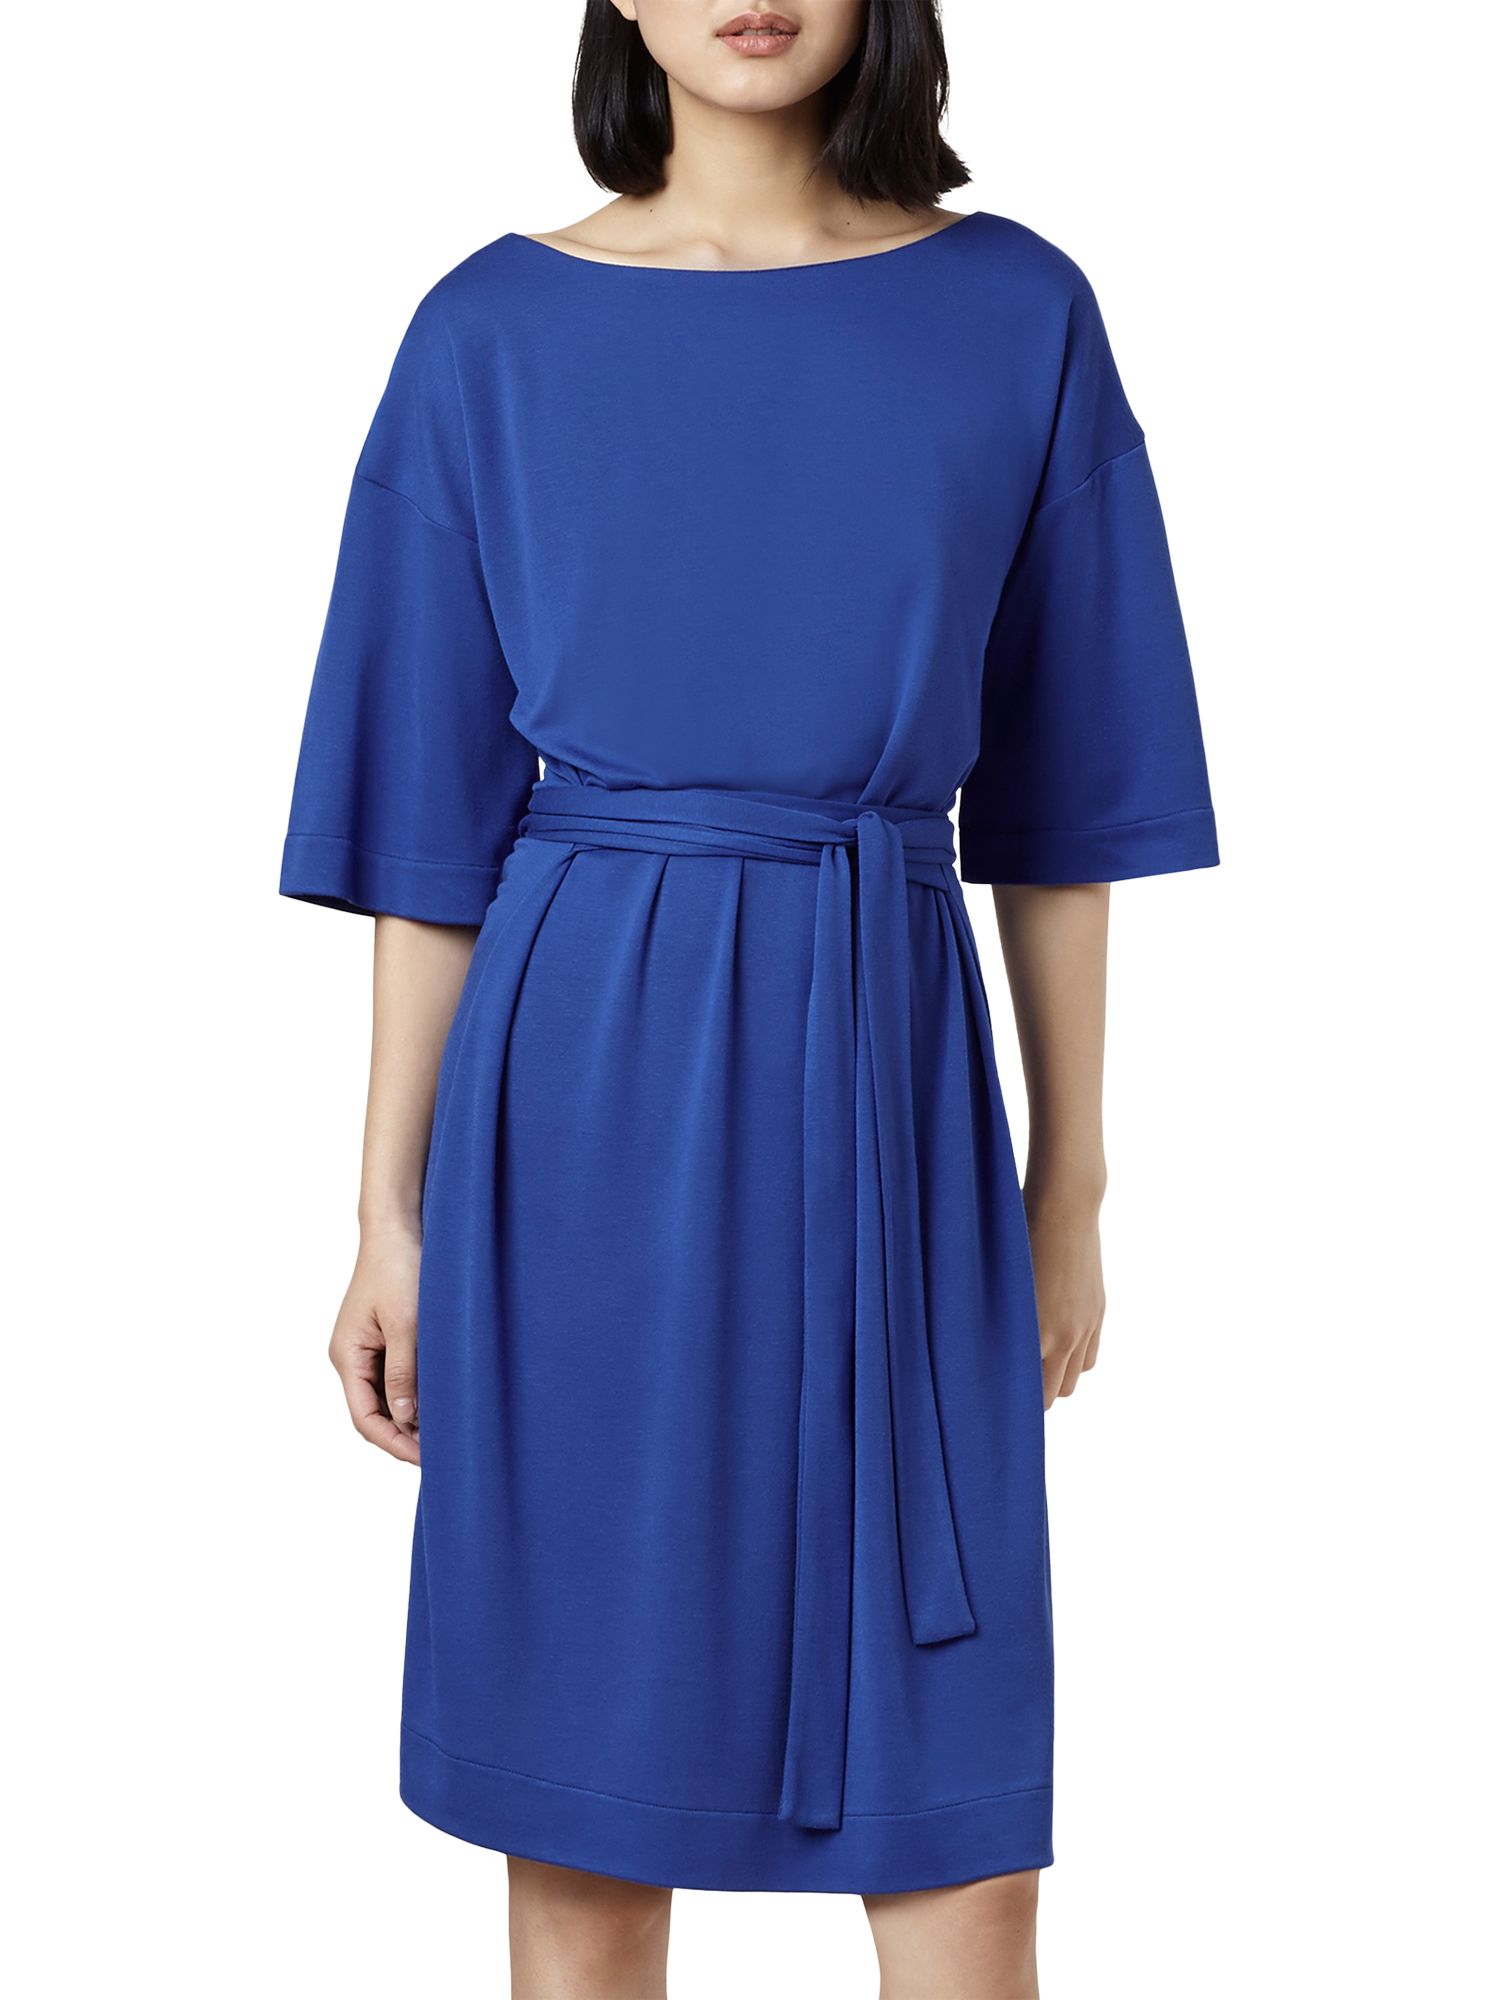 Finery Hatcliffe Jersey Dress, Cobalt 